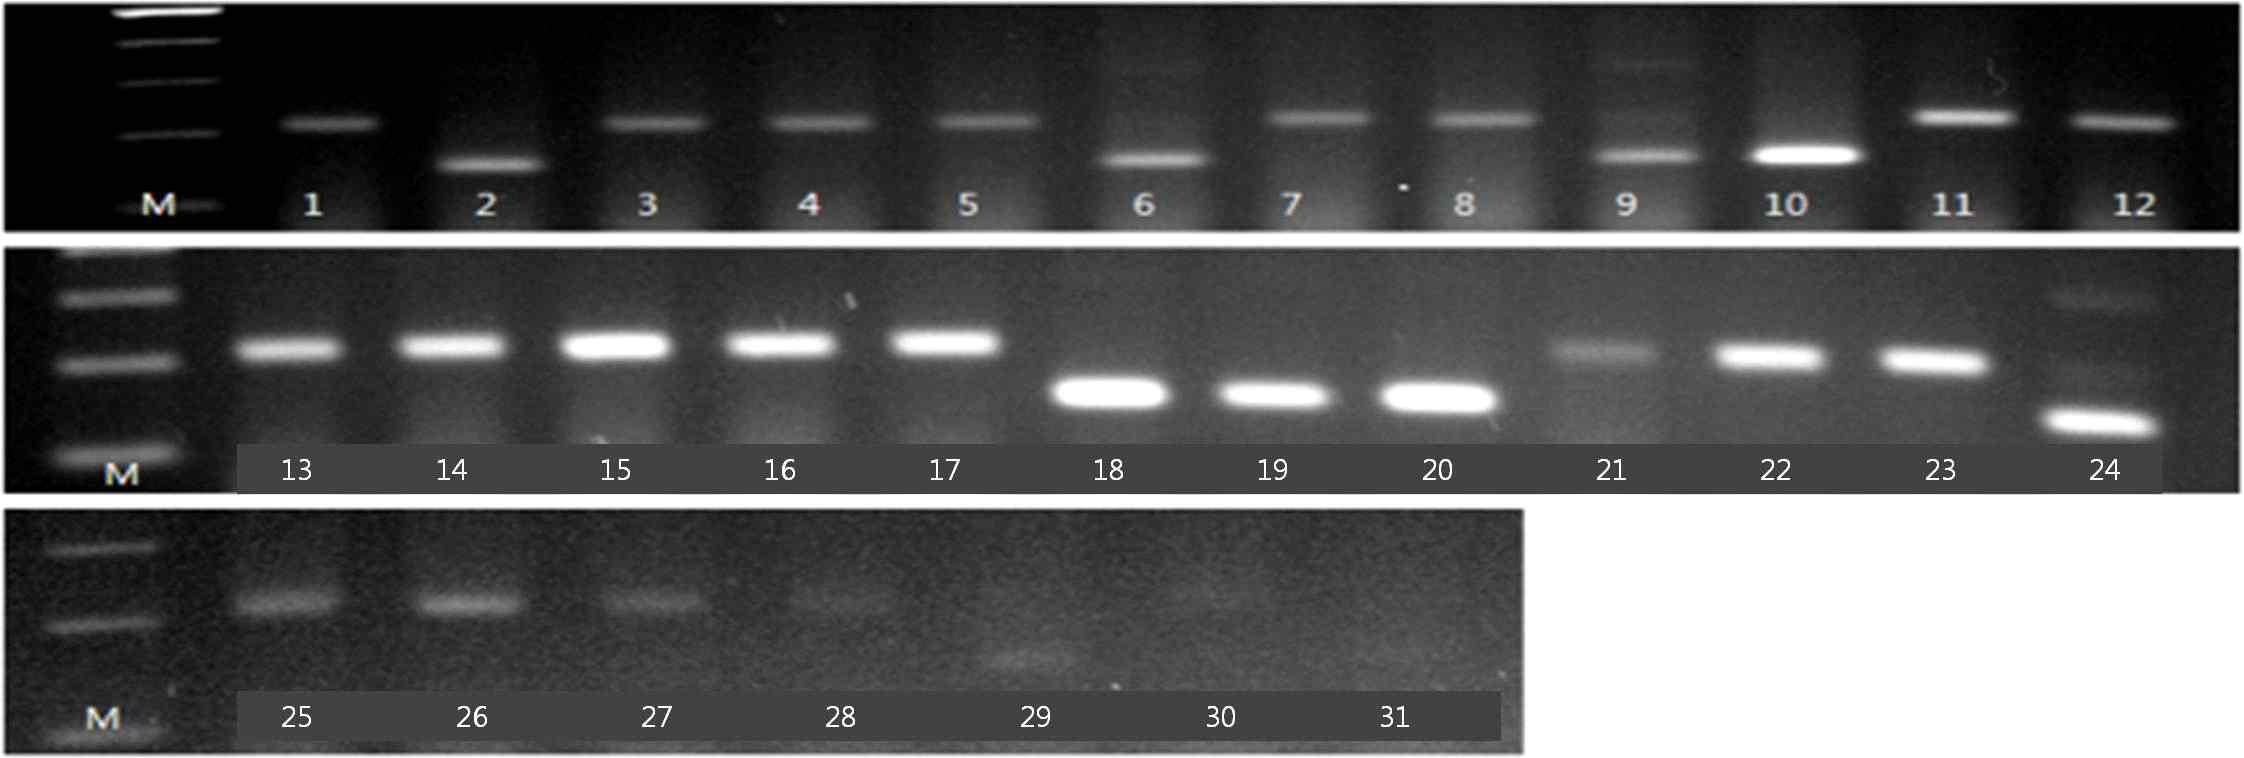 Xgwm493 분자마커의 DNA 패턴